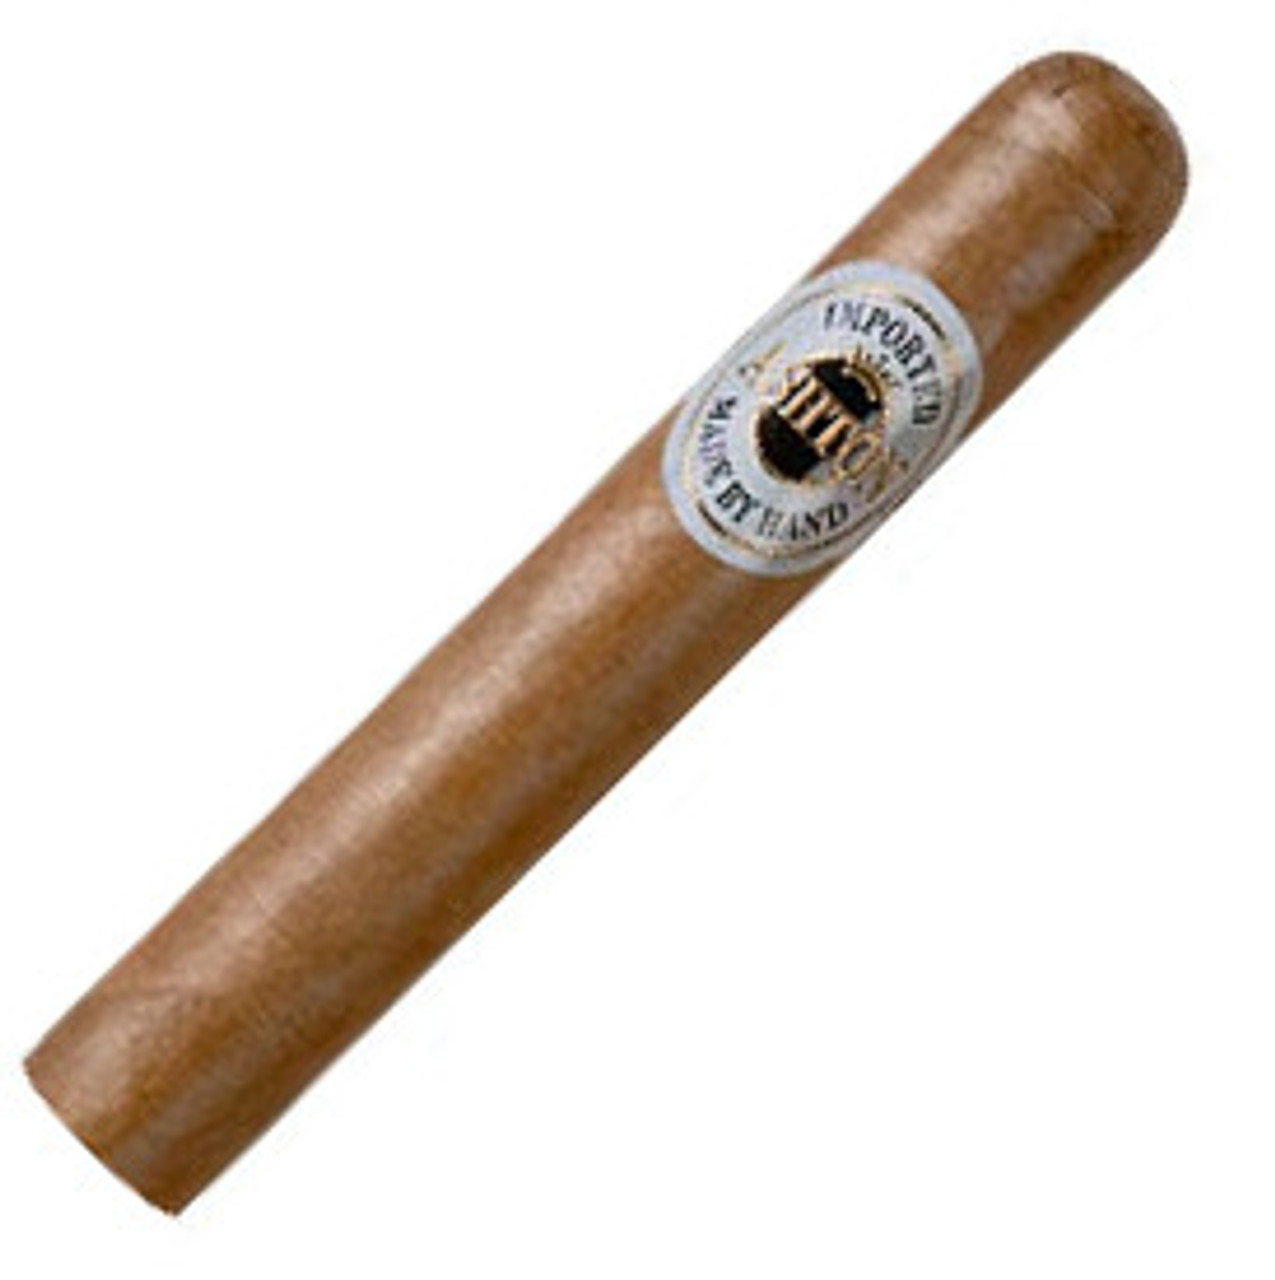 Ashton Magnum Cigars - 4.5 x 50 Single